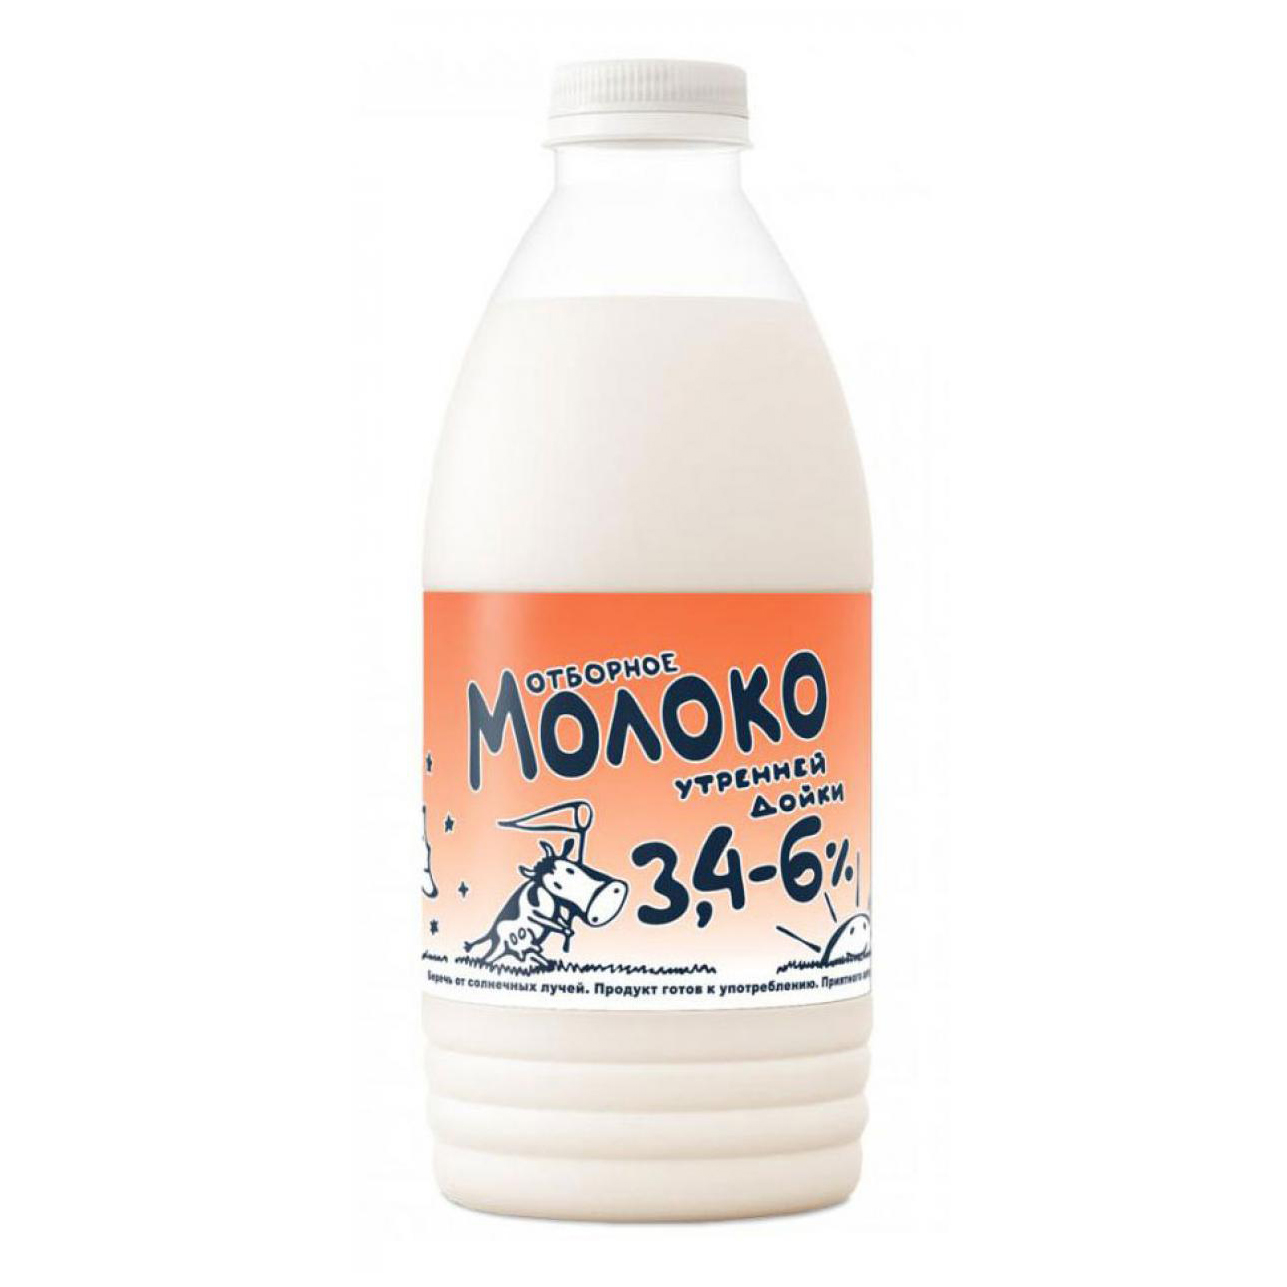 Молоко 3,4 - 6% пастеризованное 930 мл Утренней дойки Отборное